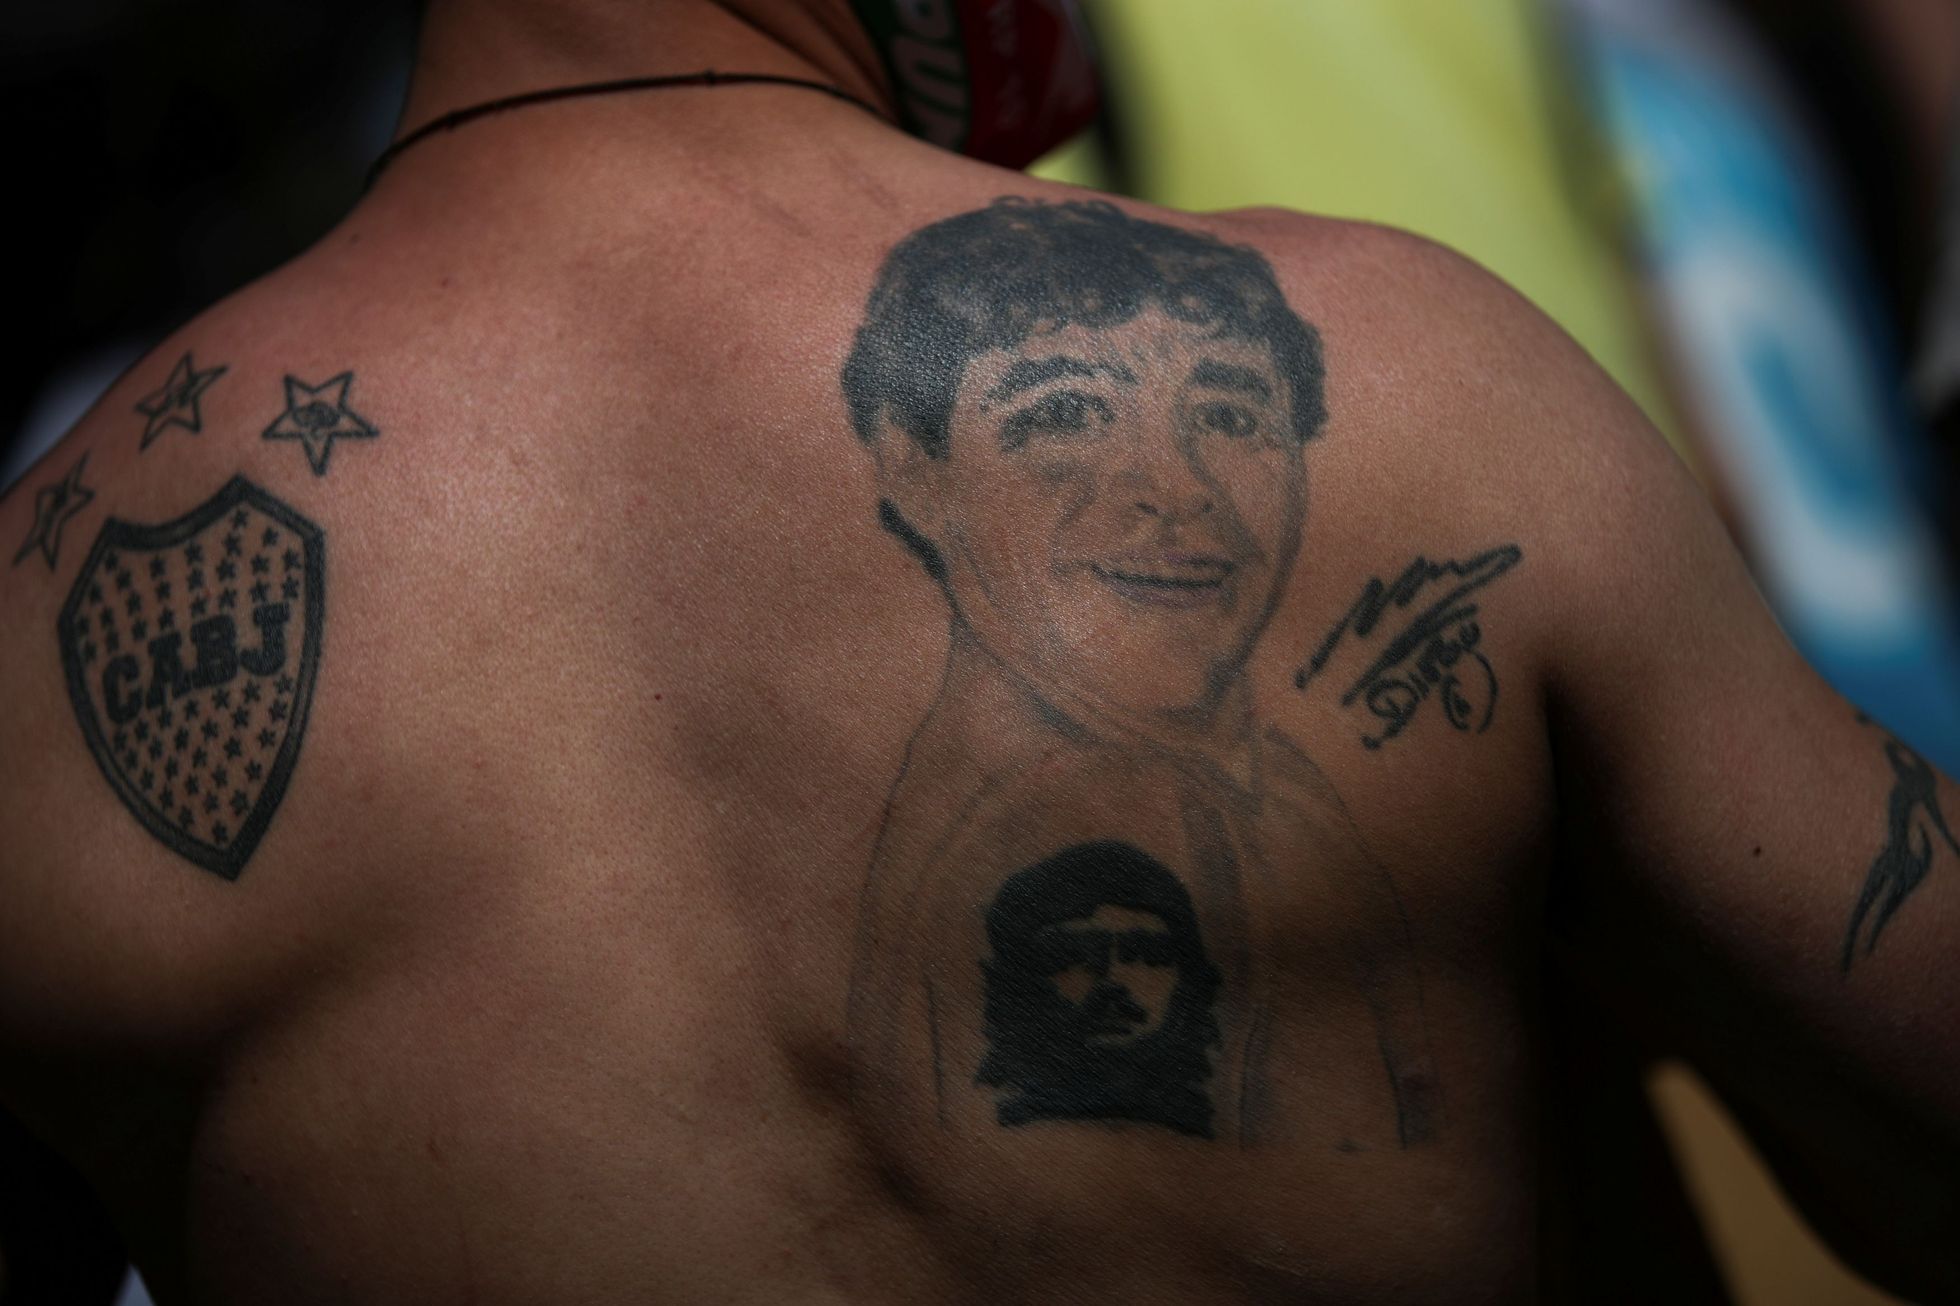 fotbal, Diego Maradona, pohřeb